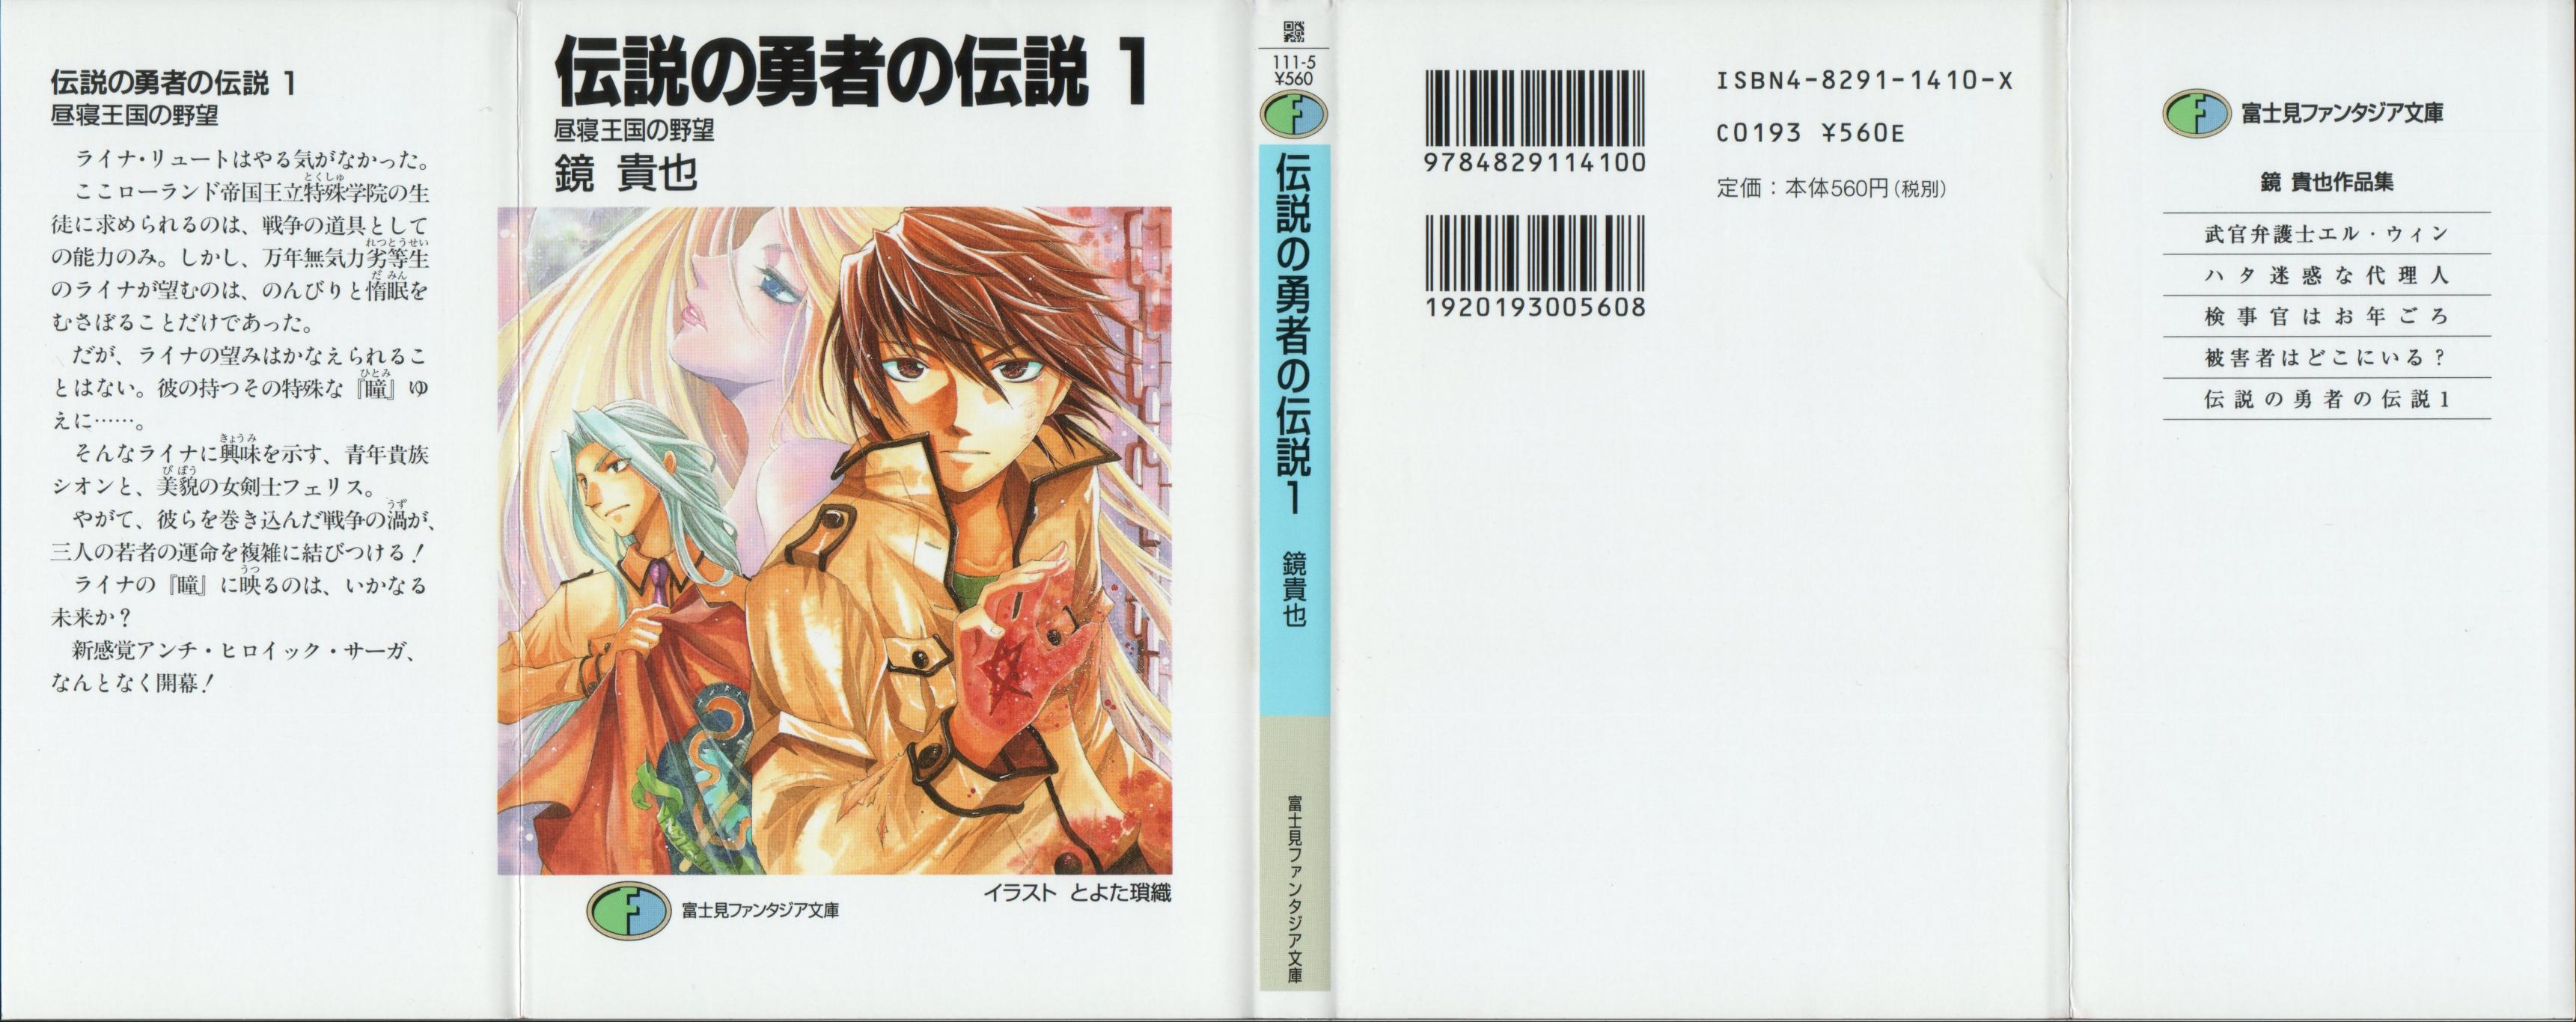 Densetsu no Yuusha no Densetsu Manga - Read Manga Online Free